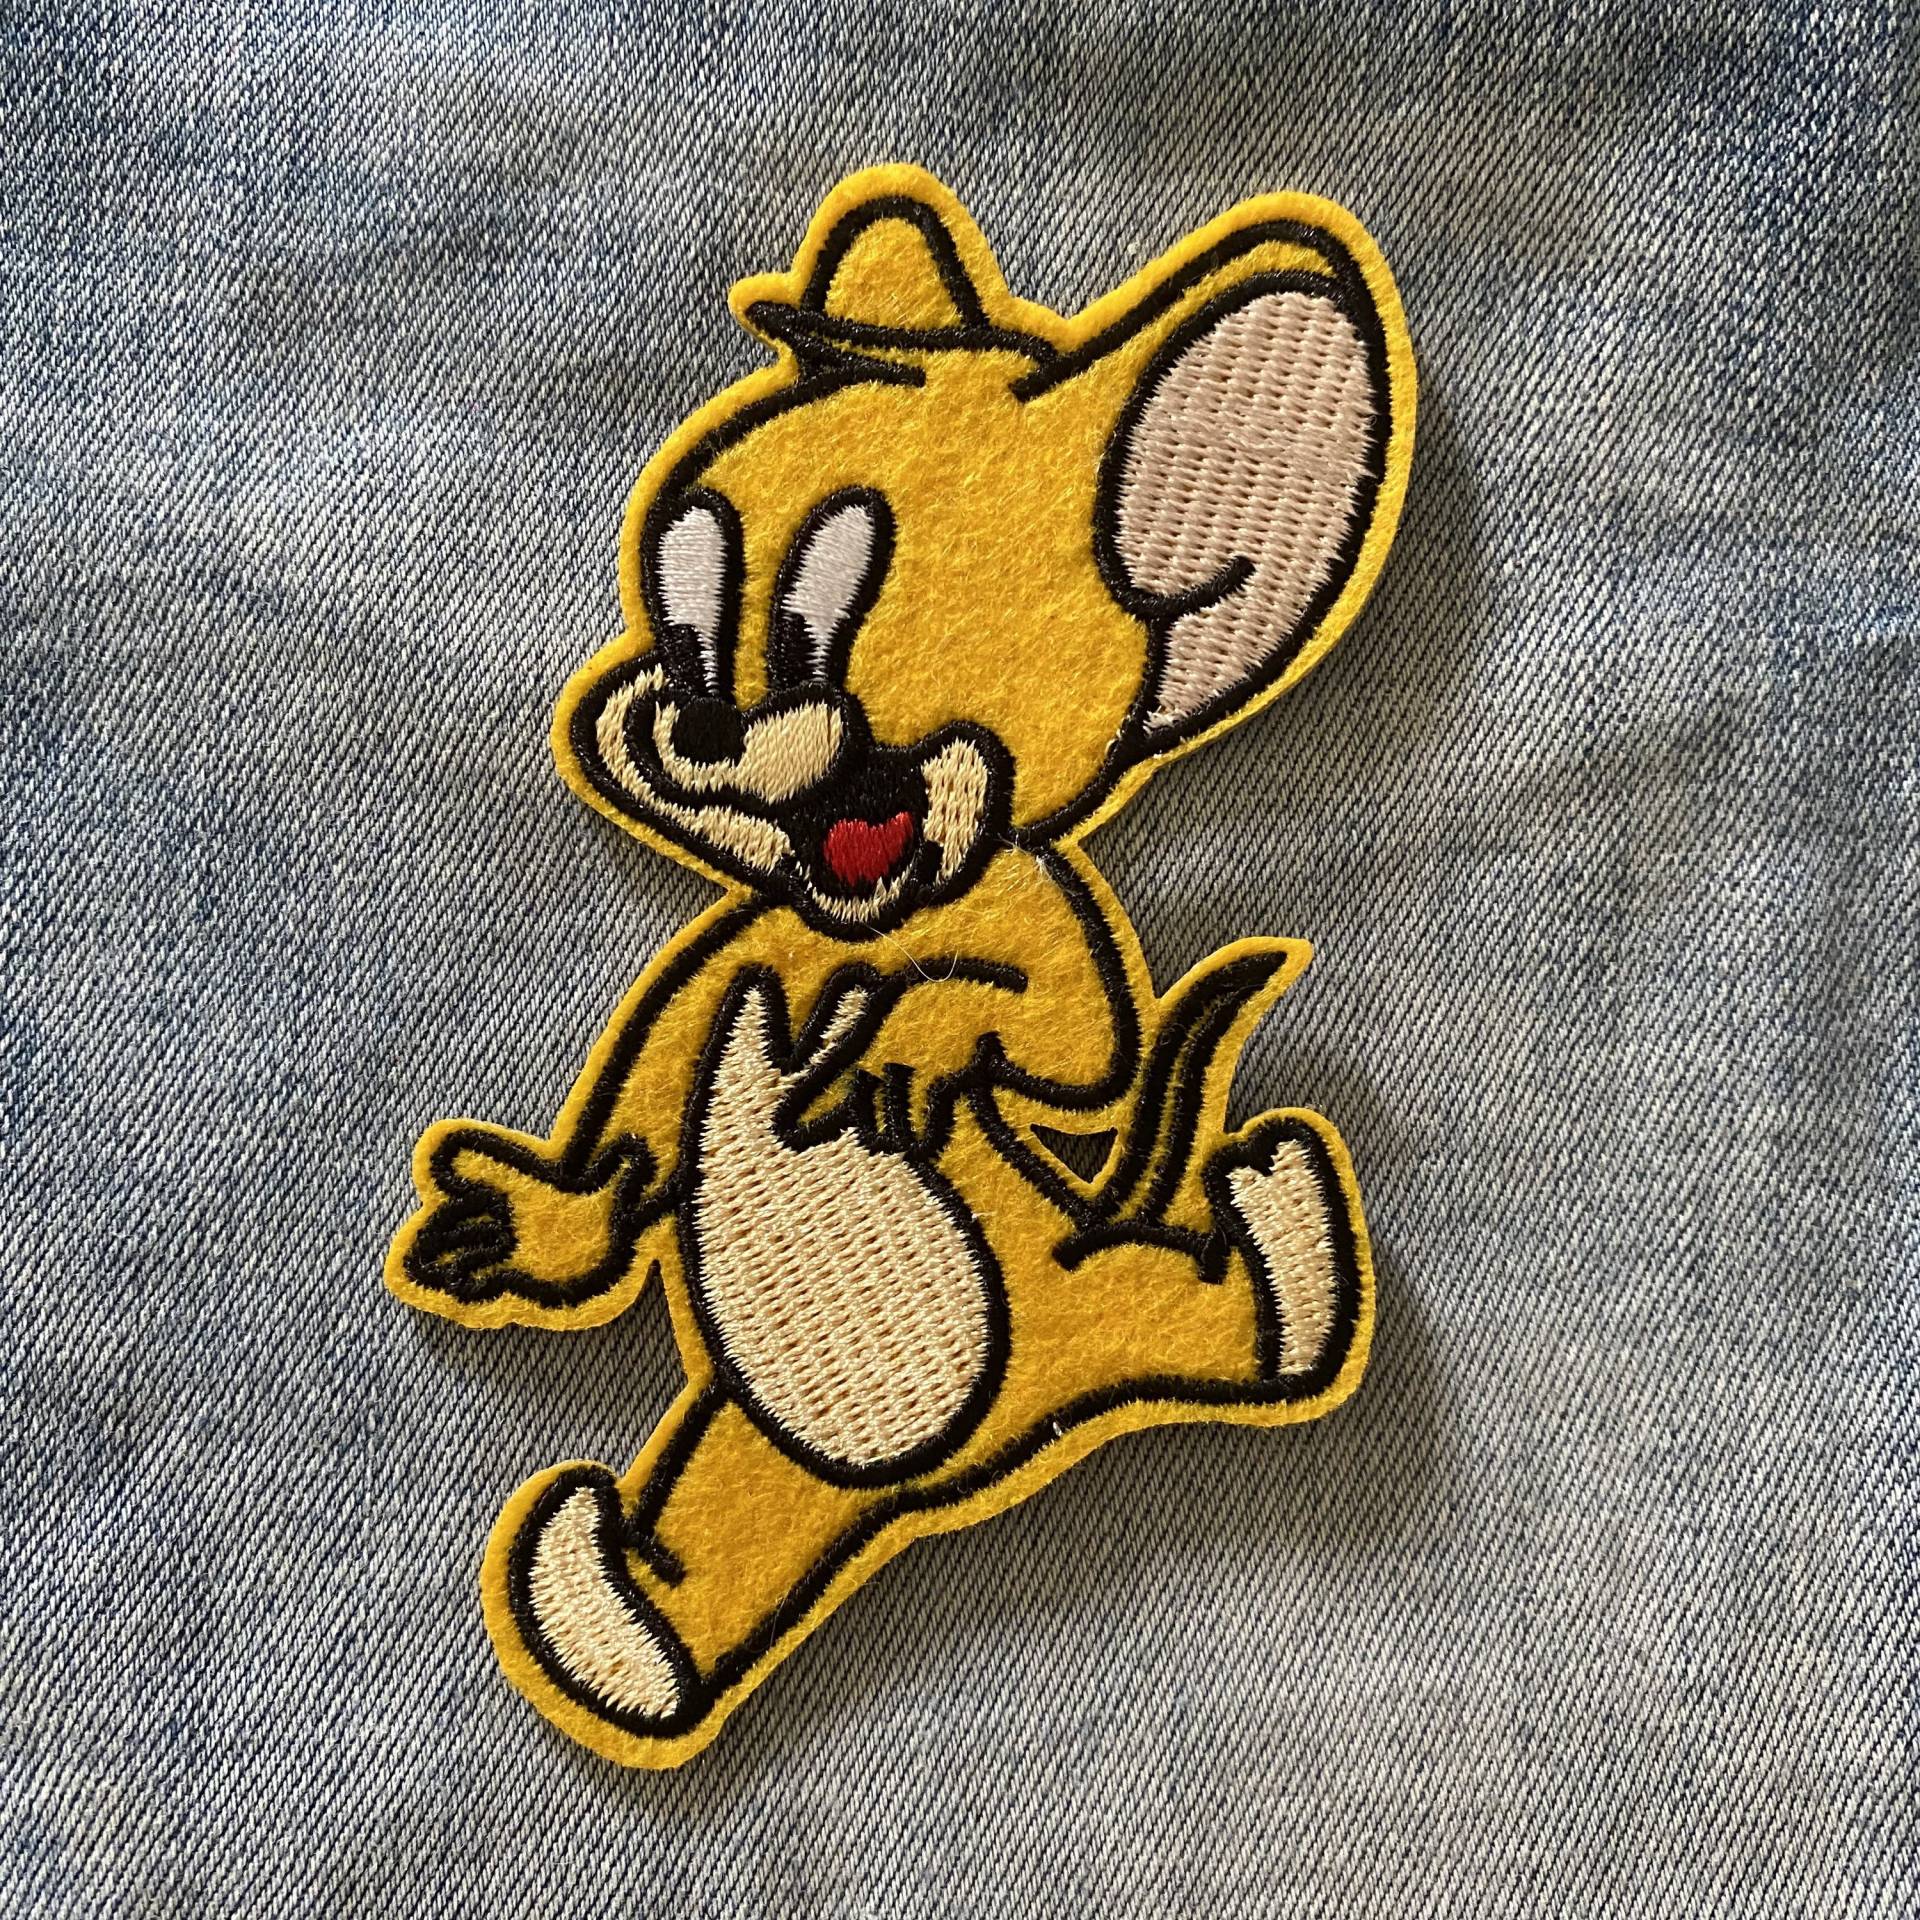 Tom Und Jerry Cartoon Bügelbild Für Jeansjacke Oder Tasche Patch, Cat Mouse Kinder Patch Applikation Bestickter Aufnäher von IronOnPatchesQLD